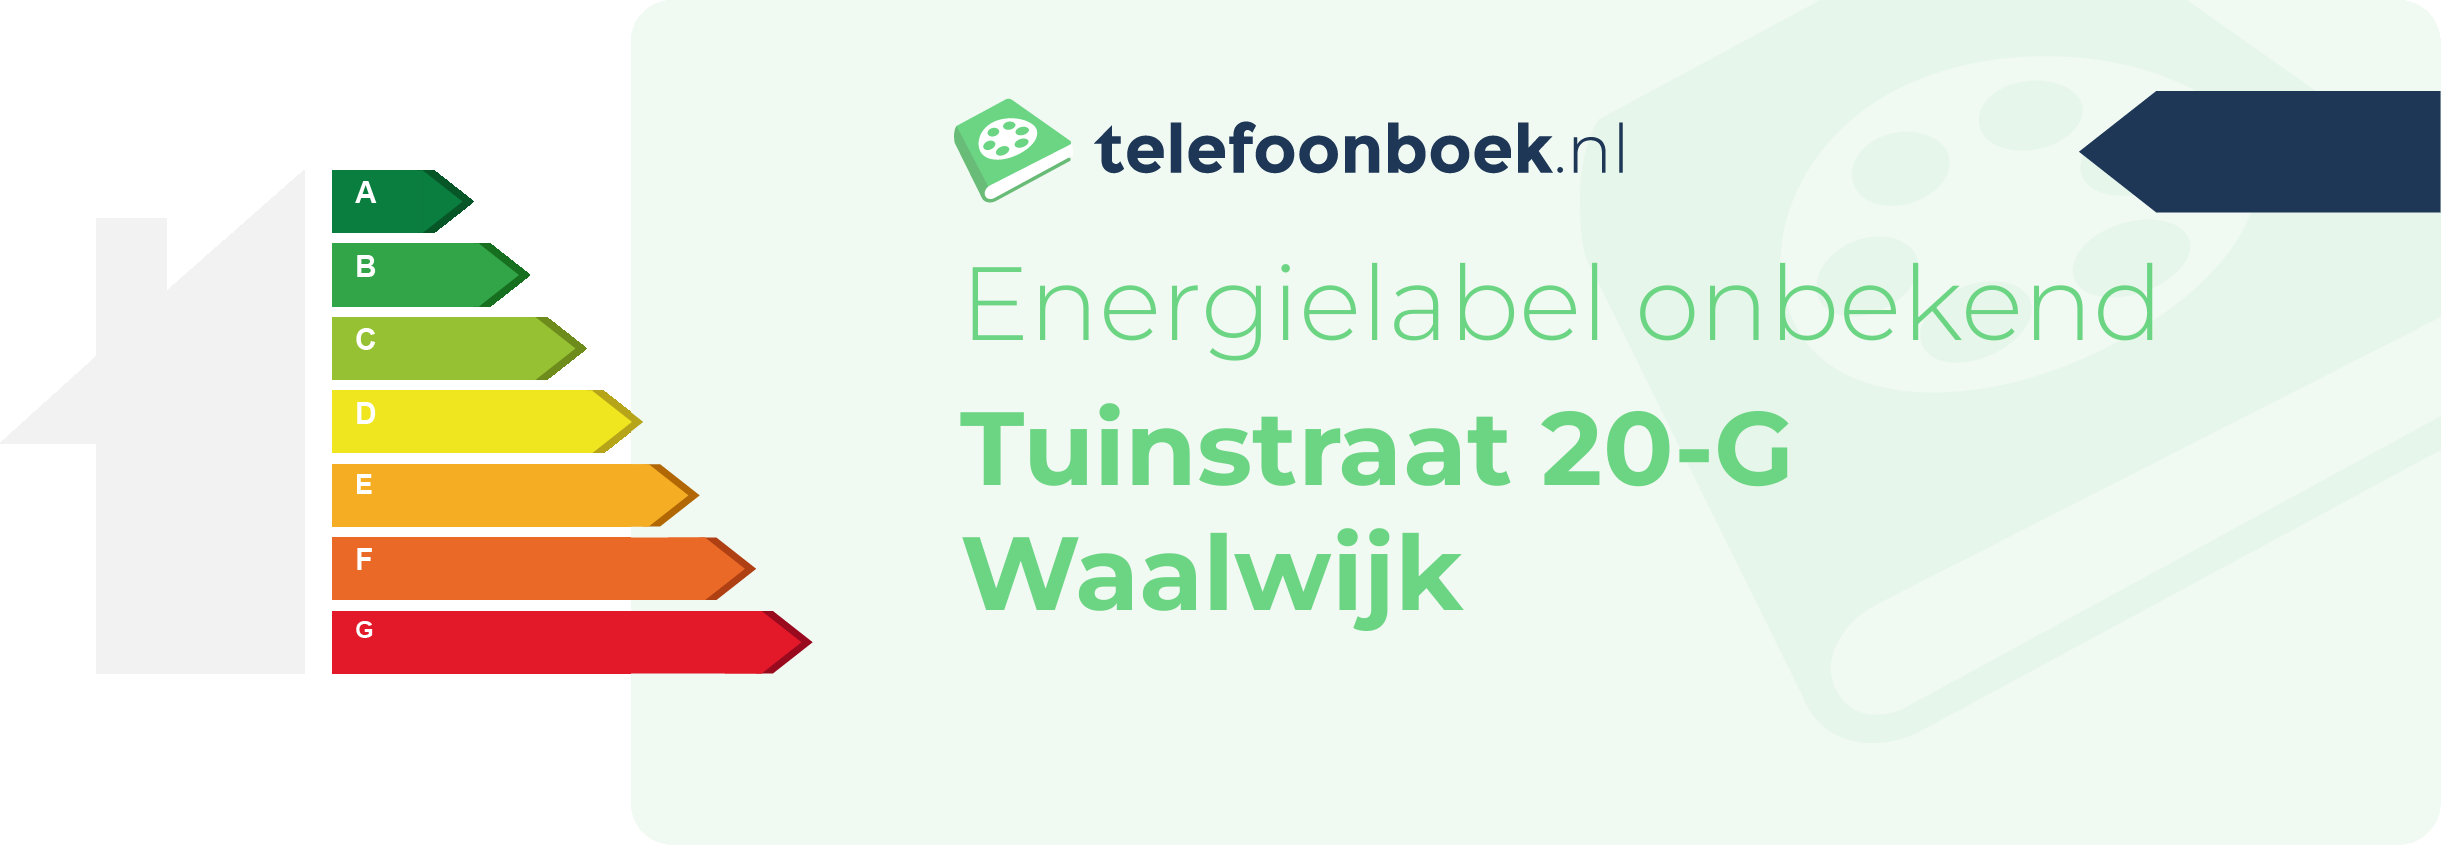 Energielabel Tuinstraat 20-G Waalwijk